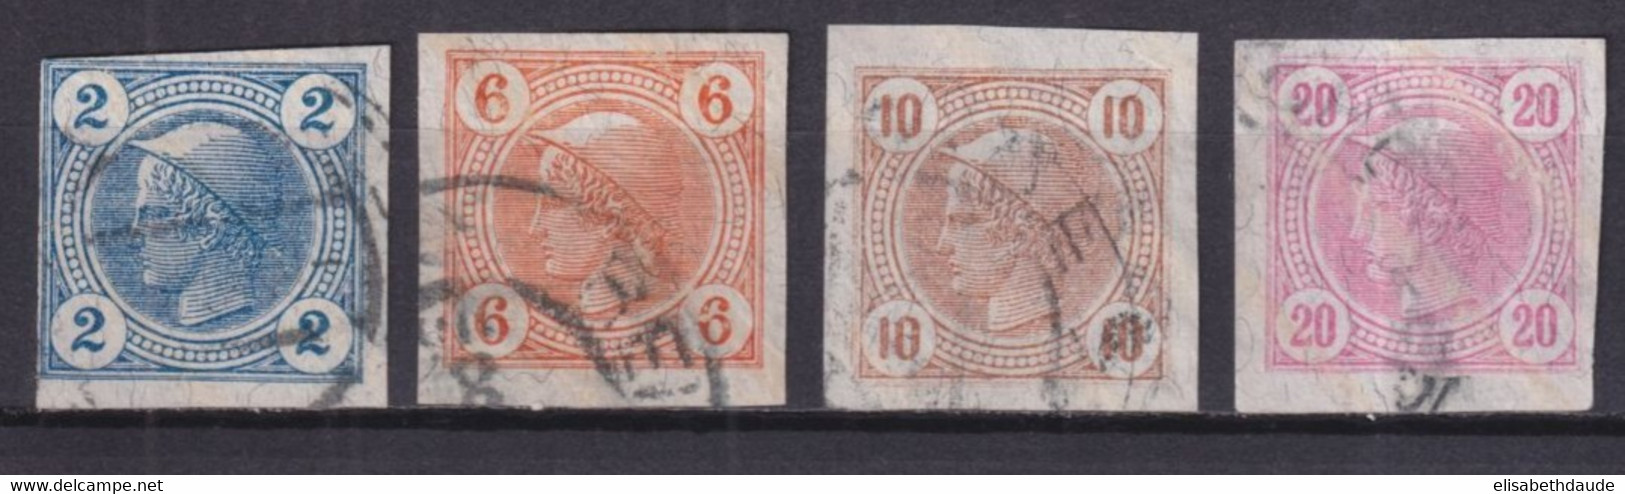 AUTRICHE - 1899 - JOURNAUX YVERT N°12a/15a LIGNES OBLIQUES ! OBLITERES - COTE = 100 EUR - Gebruikt